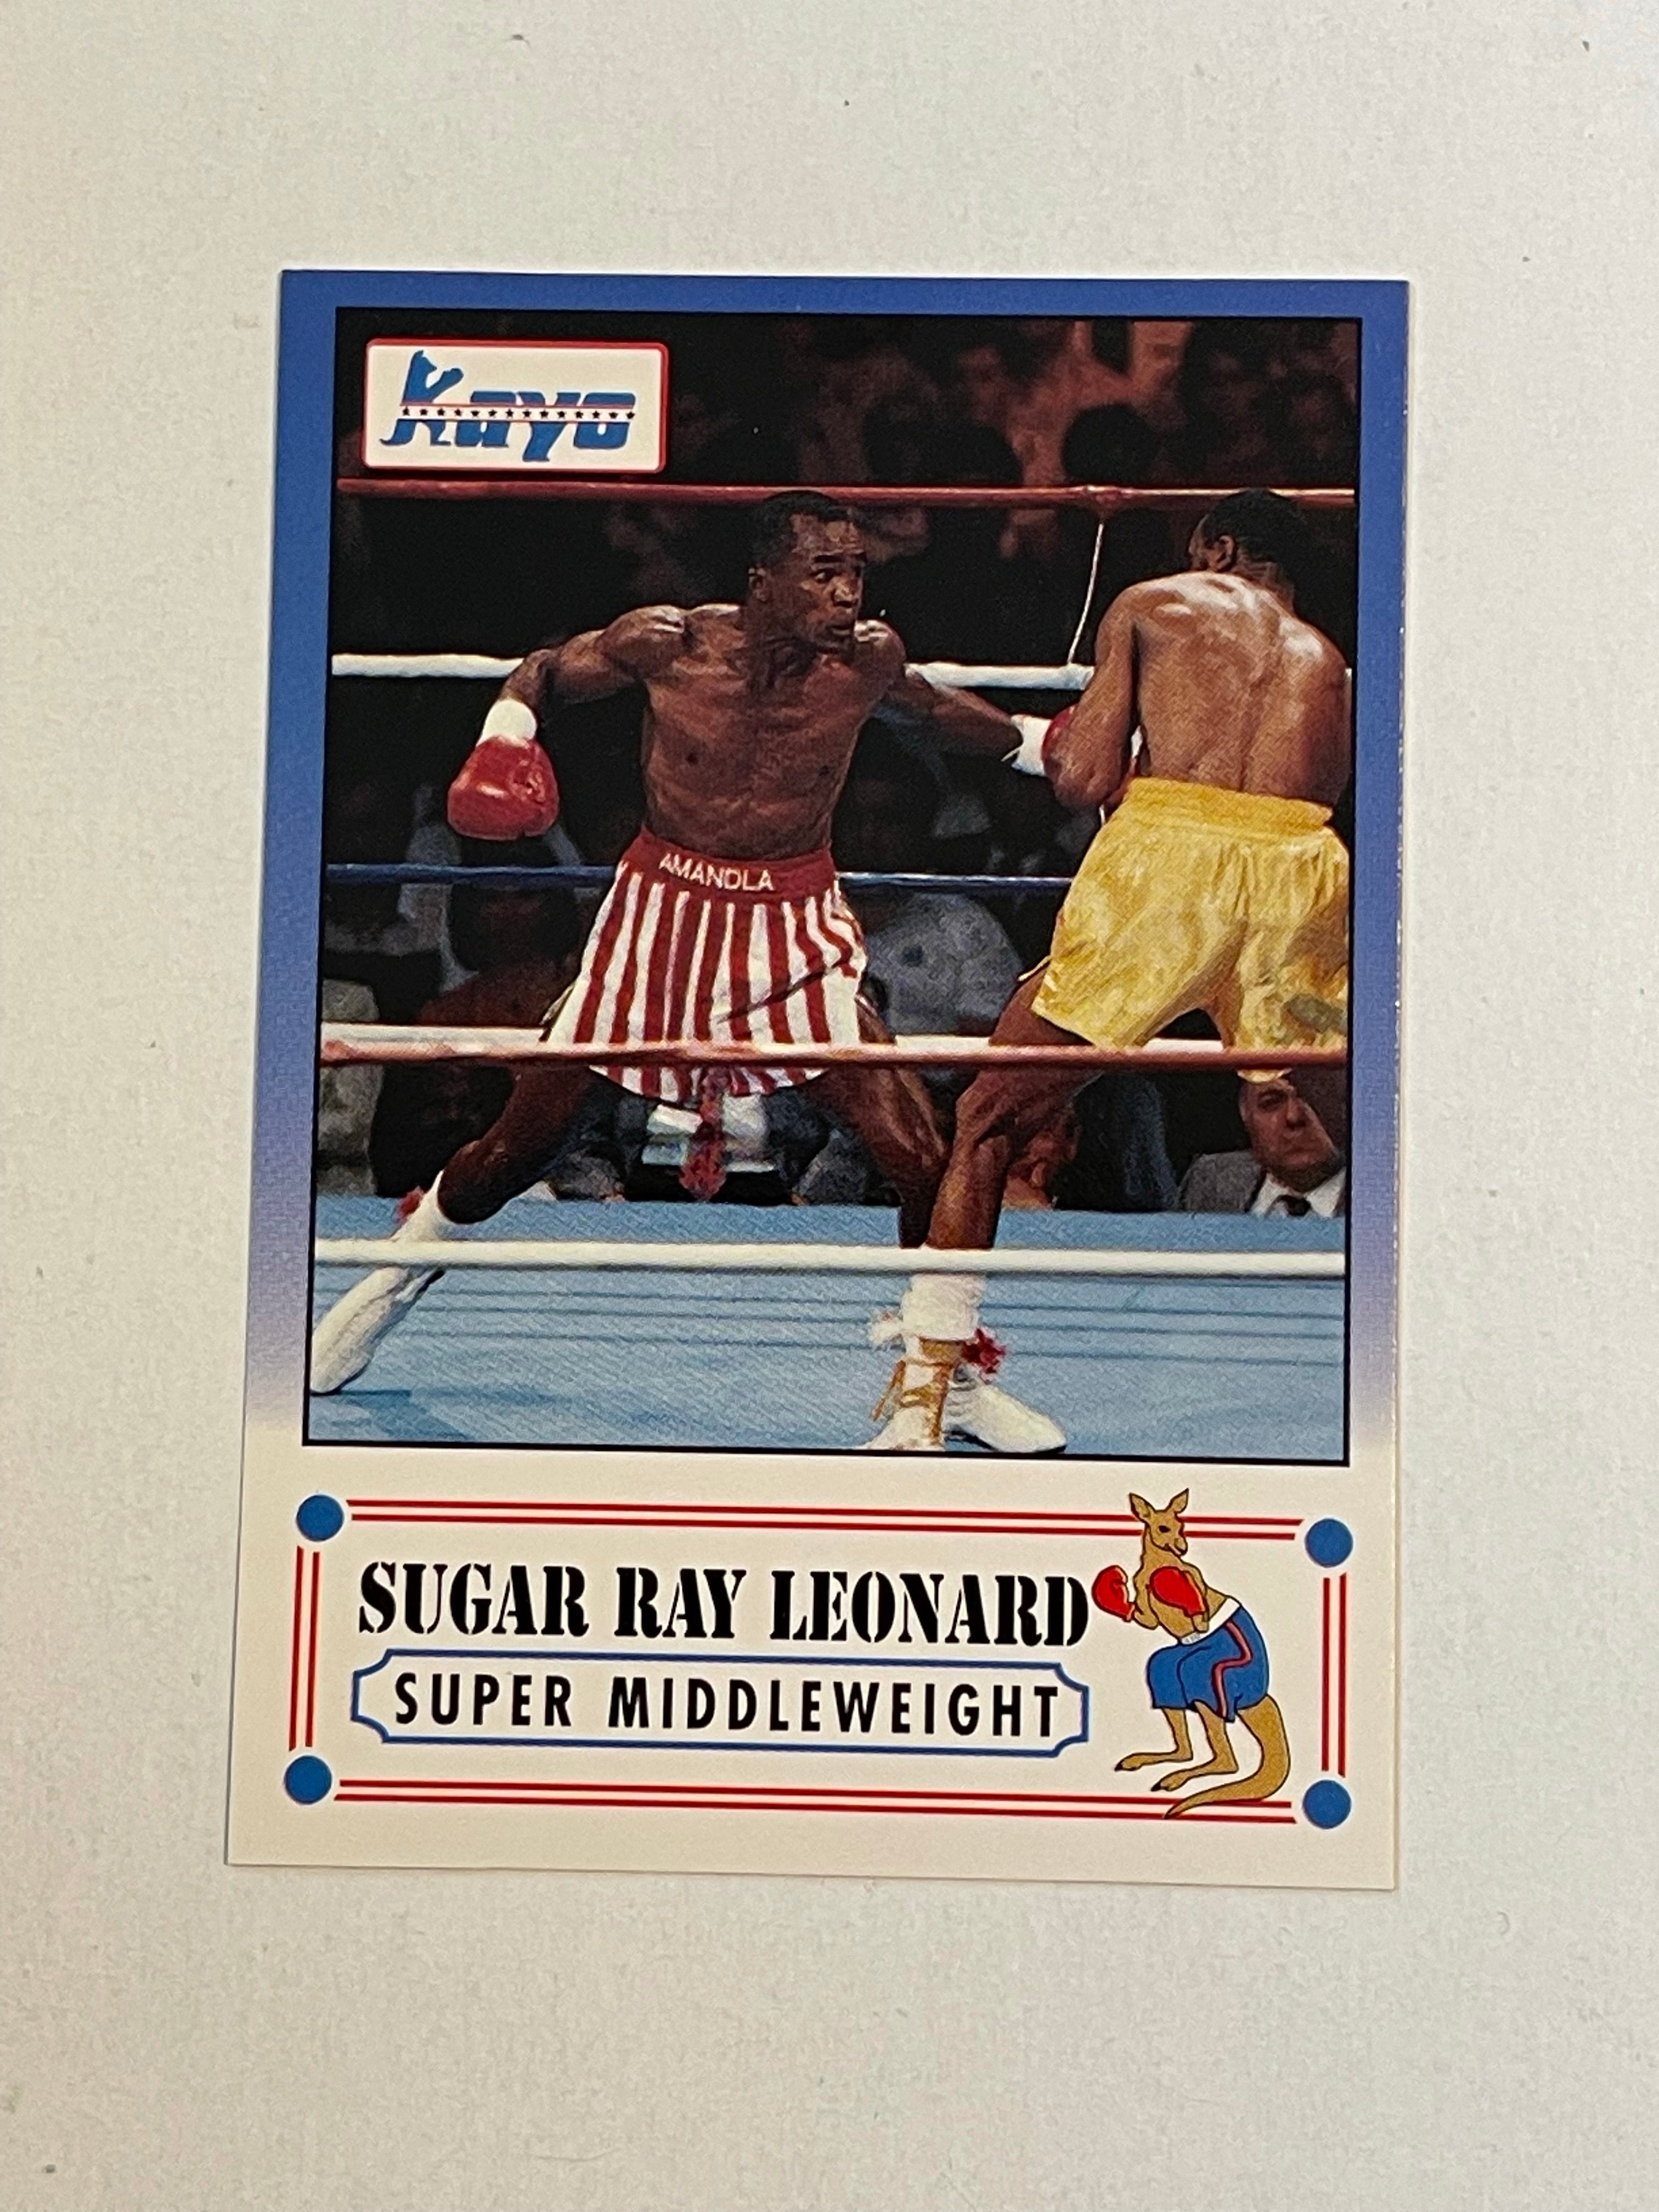 Sugar Ray Leonard Kayo boxing Prototype special card 1991